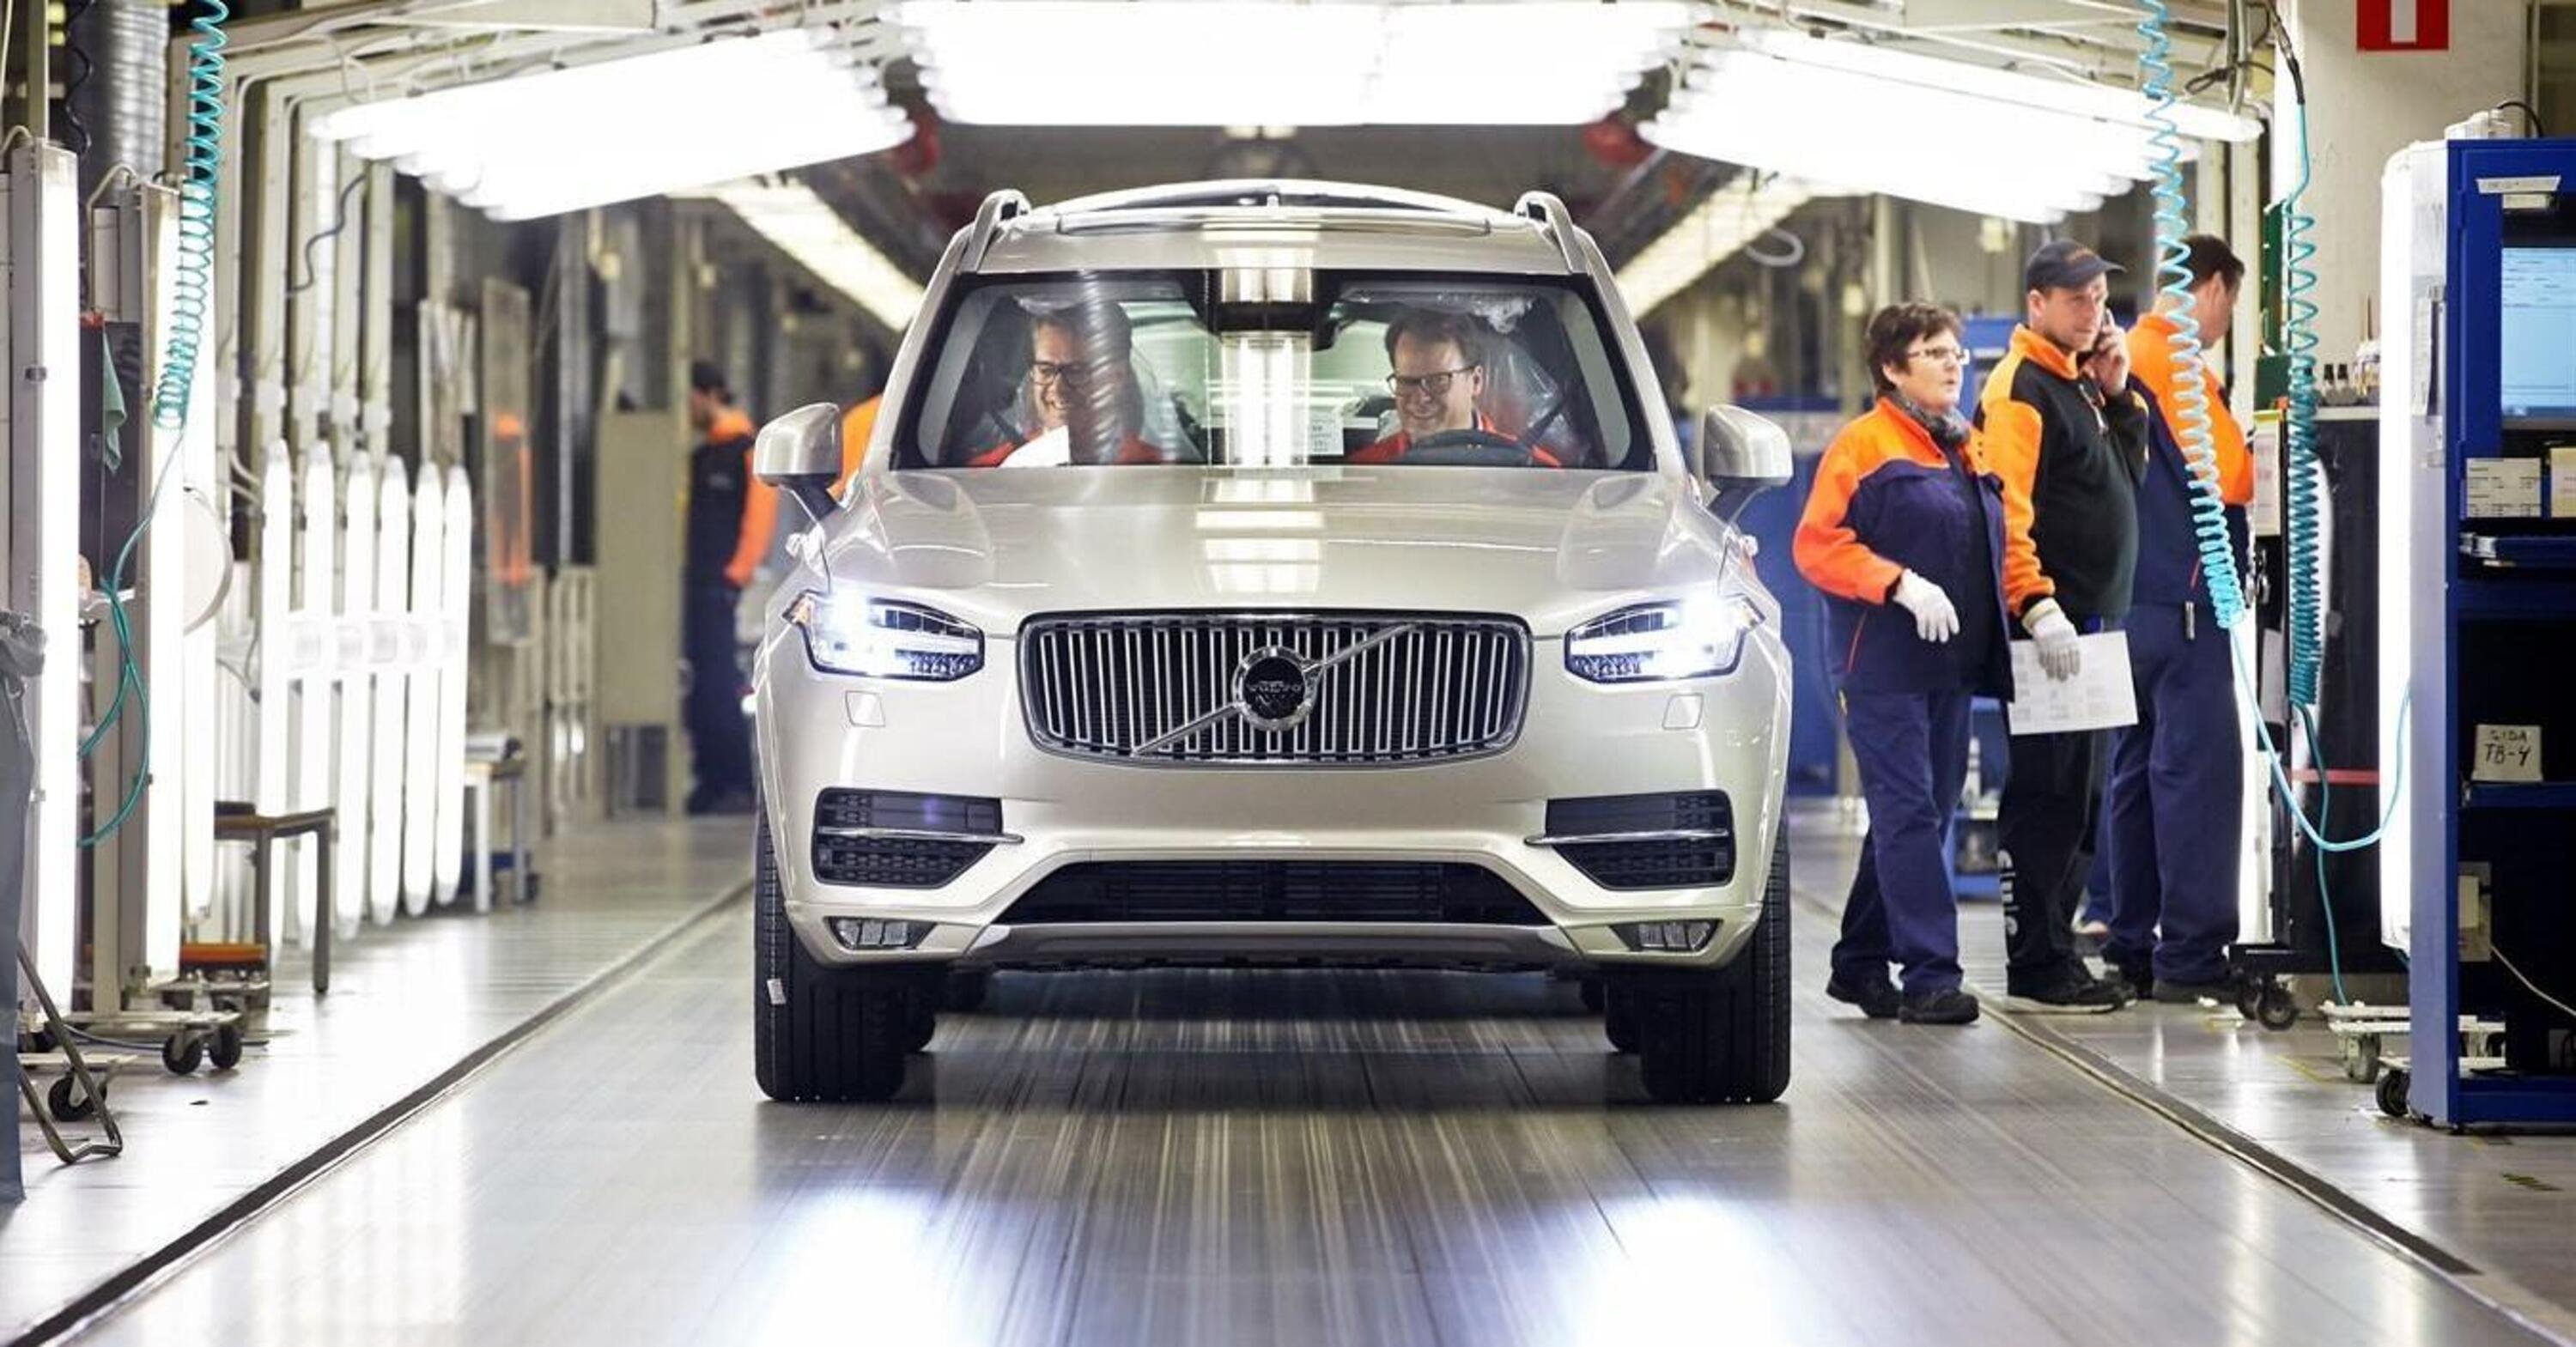  La Volvo annuncia l&rsquo;apertura di una terza fabbrica in Europa